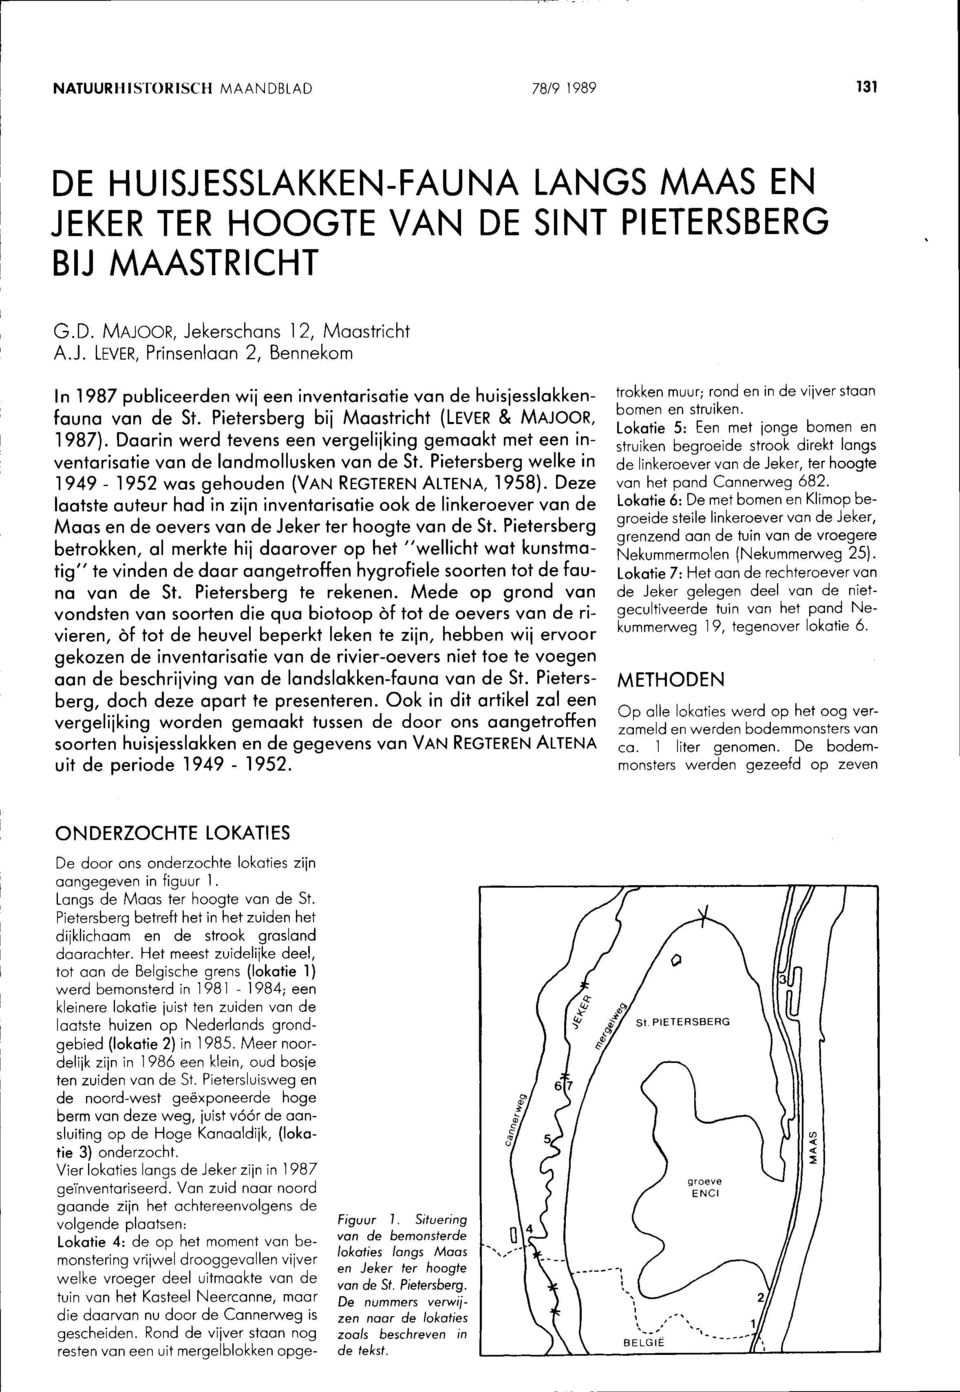 Pietersberg welke in 1949-1952 was gehouden (VAN REGTEREN ALTENA, 1958). Deze laatste auteur had in zijn inventarisatie ook de linkeroever van de Maas en de oevers van de Jeker ter hoogte van de St.